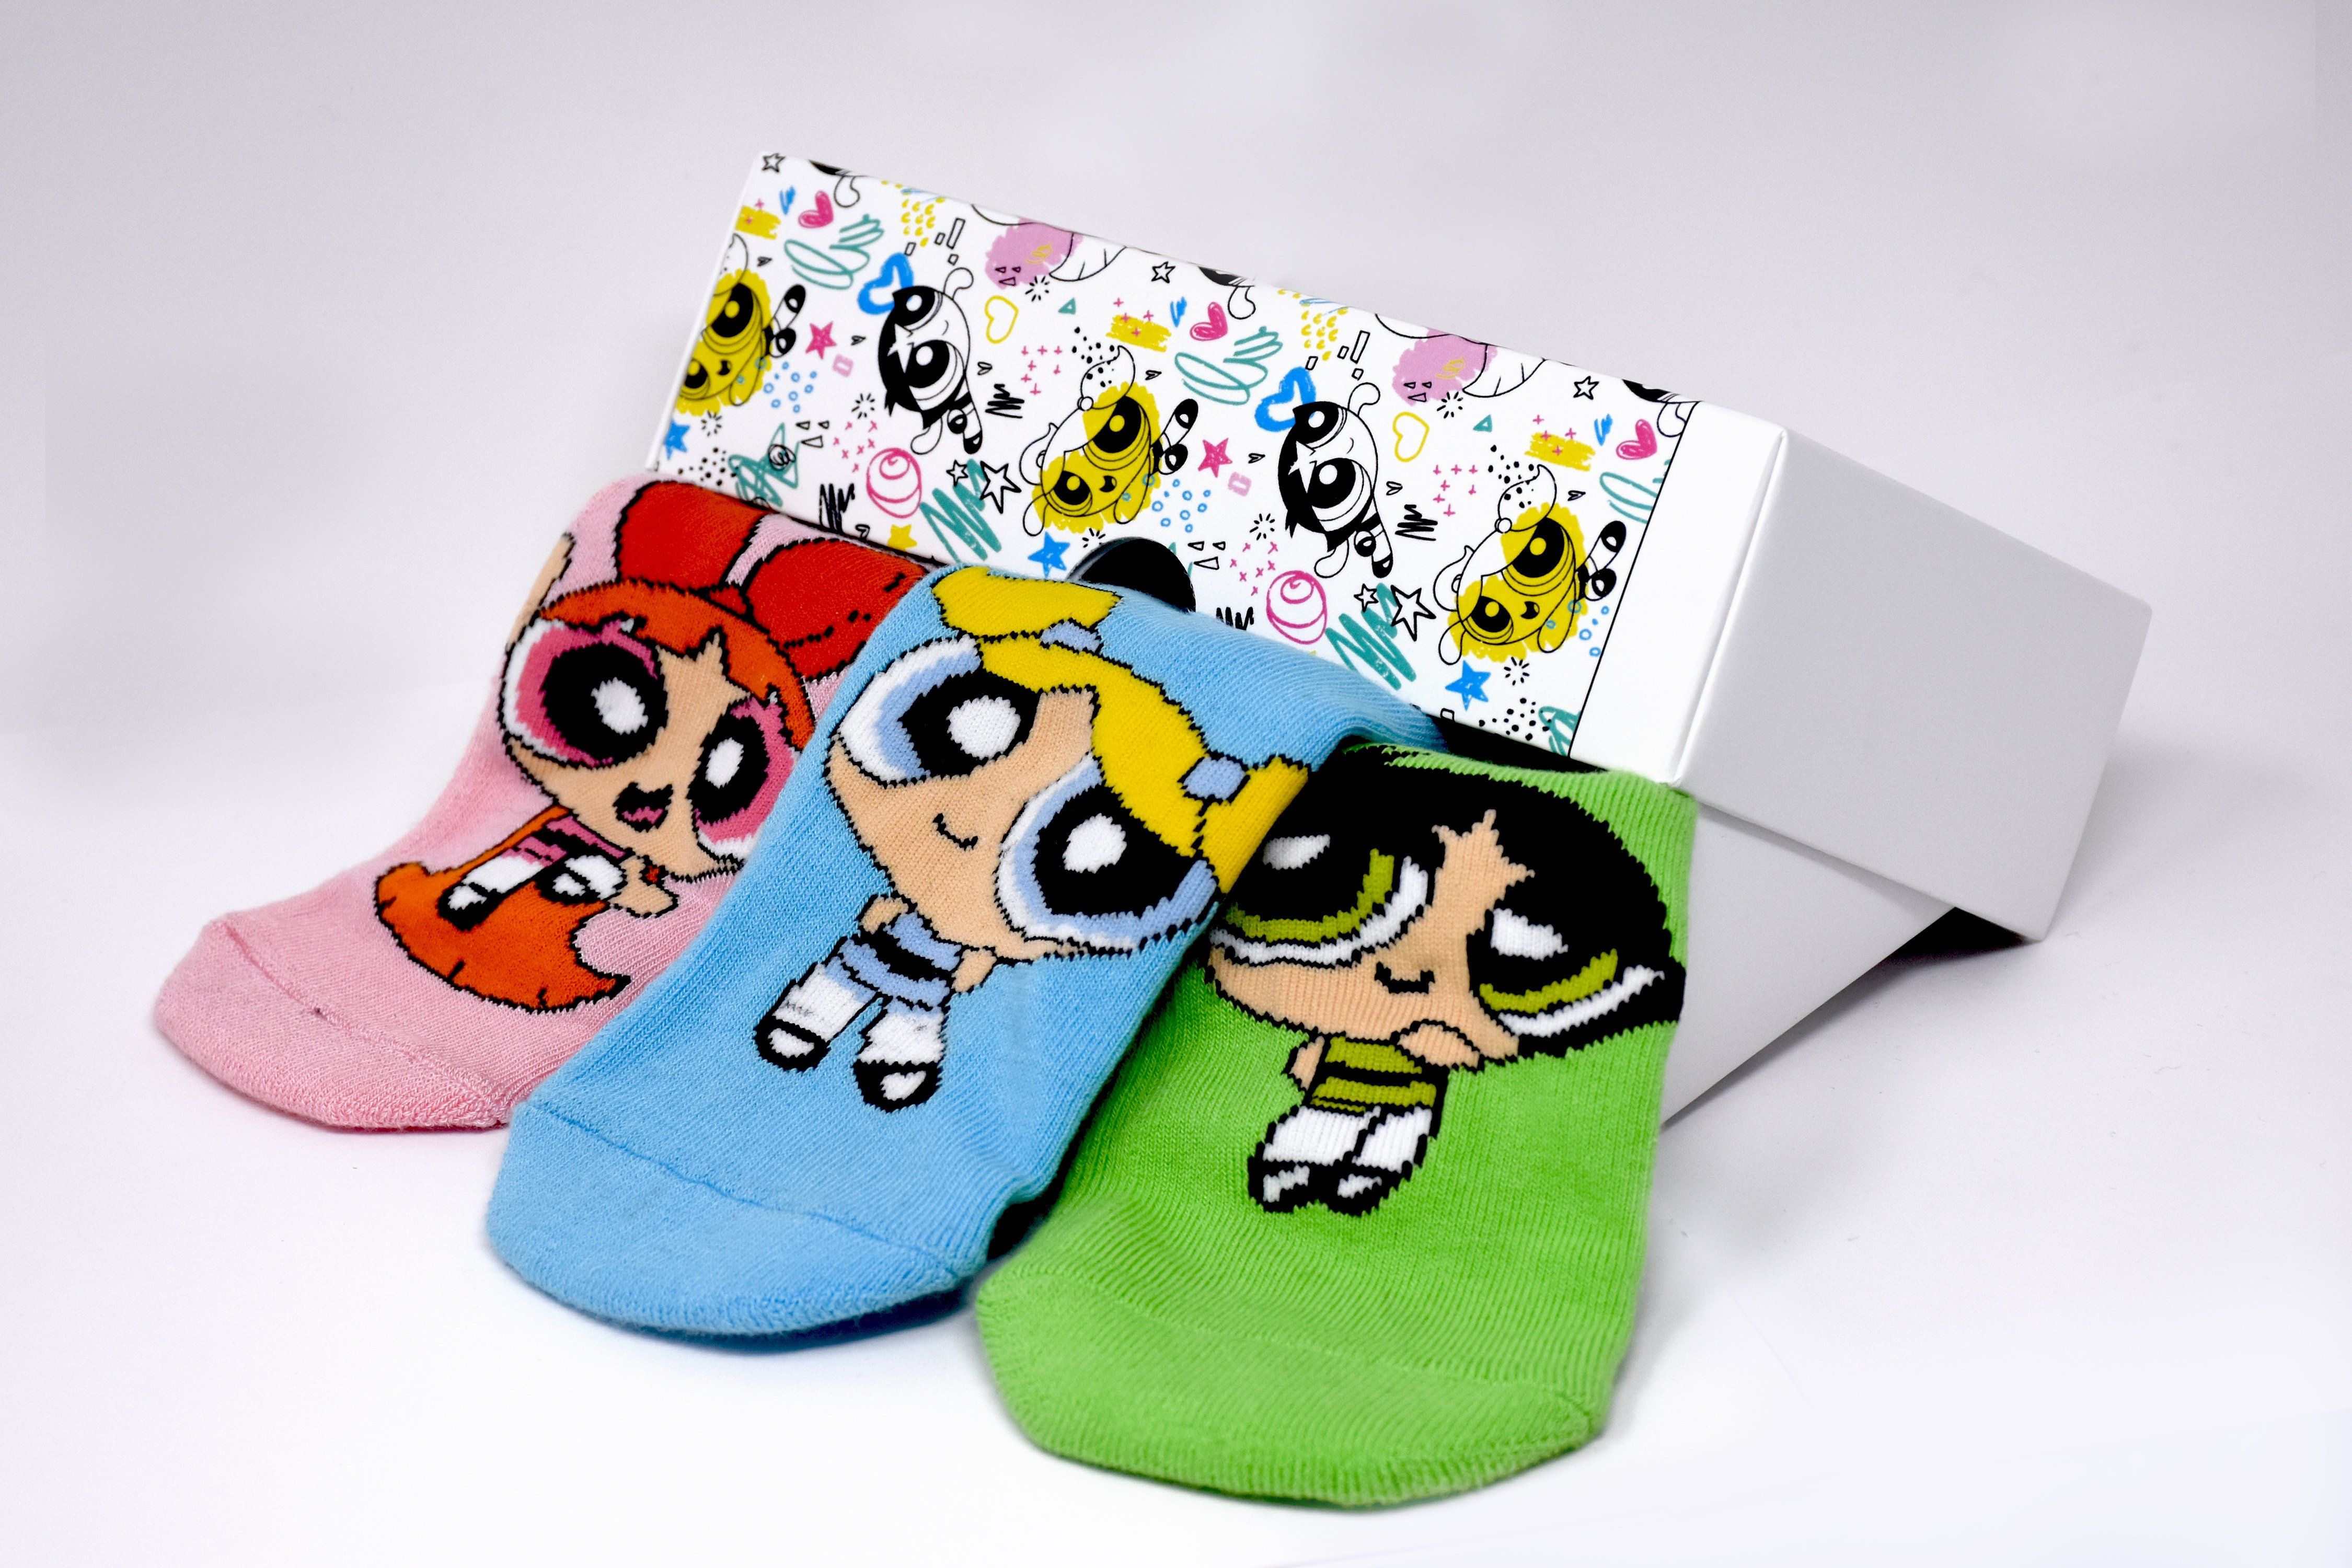 Socks-Kids socks|Kid's socks|Powerpuff girl socks for kids|Socks for ...